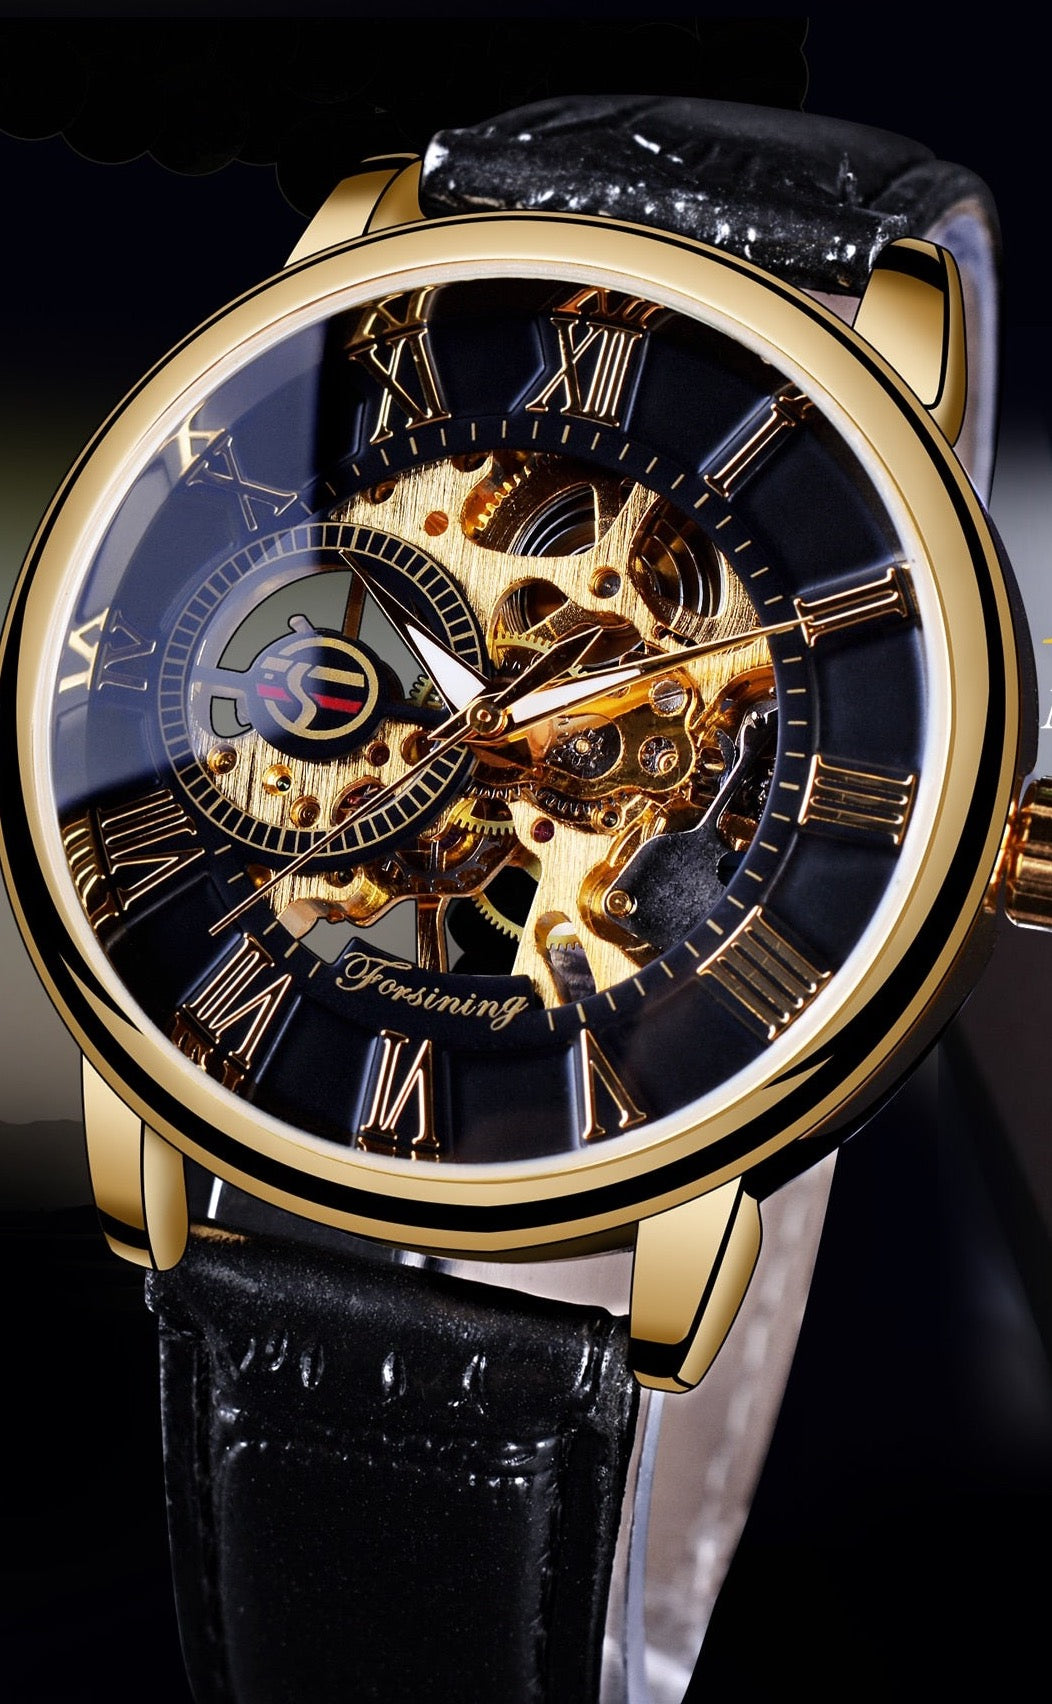 Elegance Redefined: Men's Luxury Brand Watch